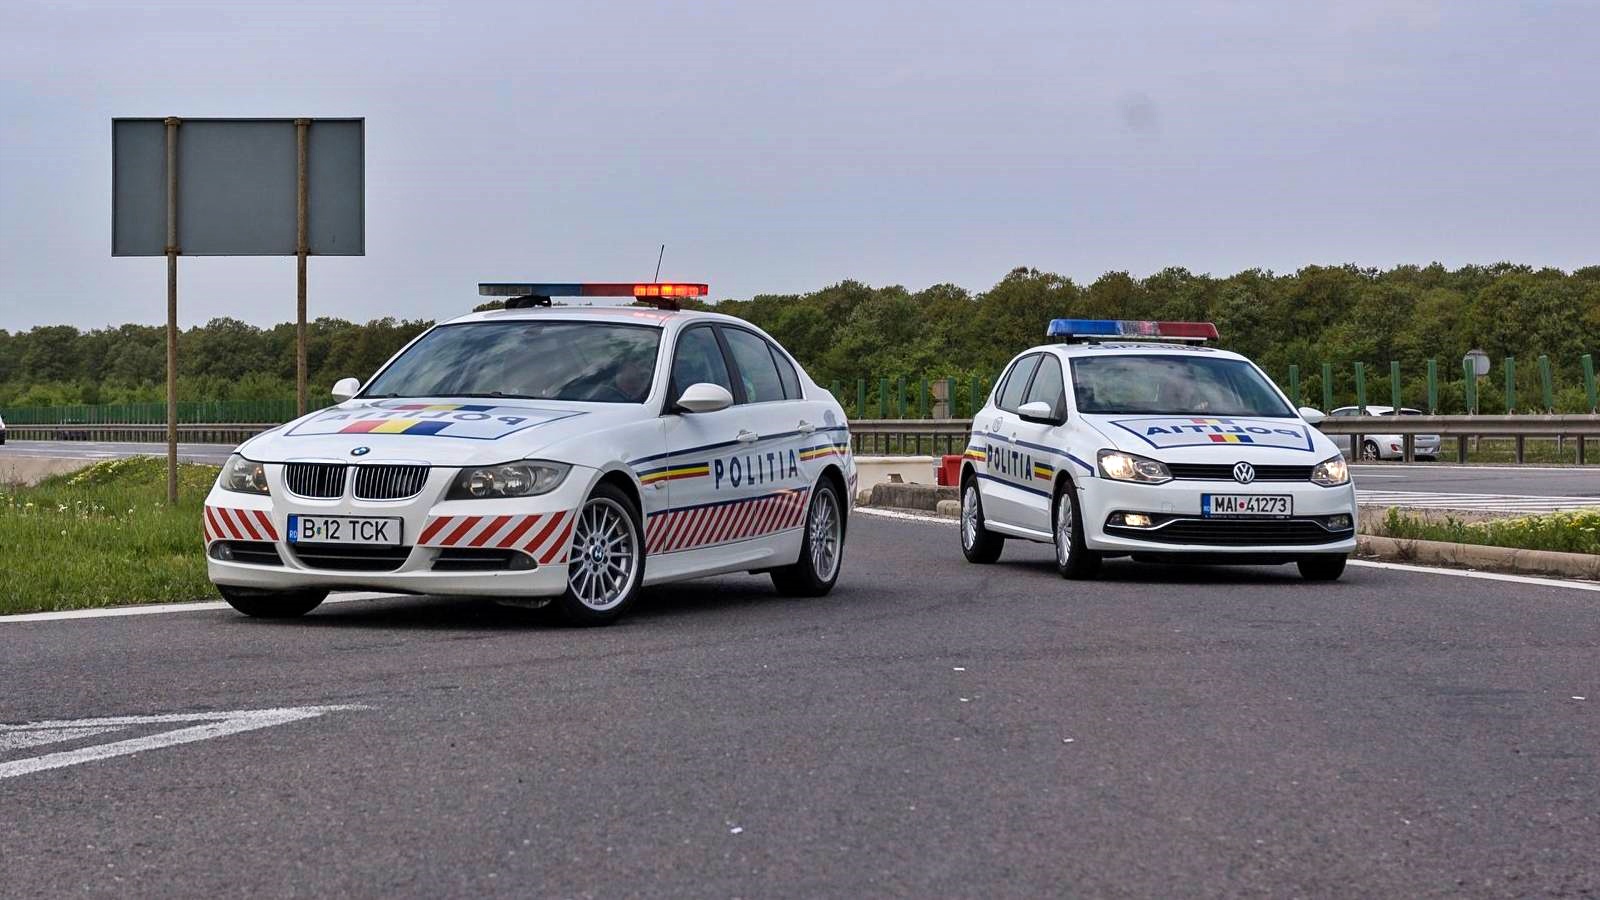 Nuovo avviso di traffico stradale della polizia rumena